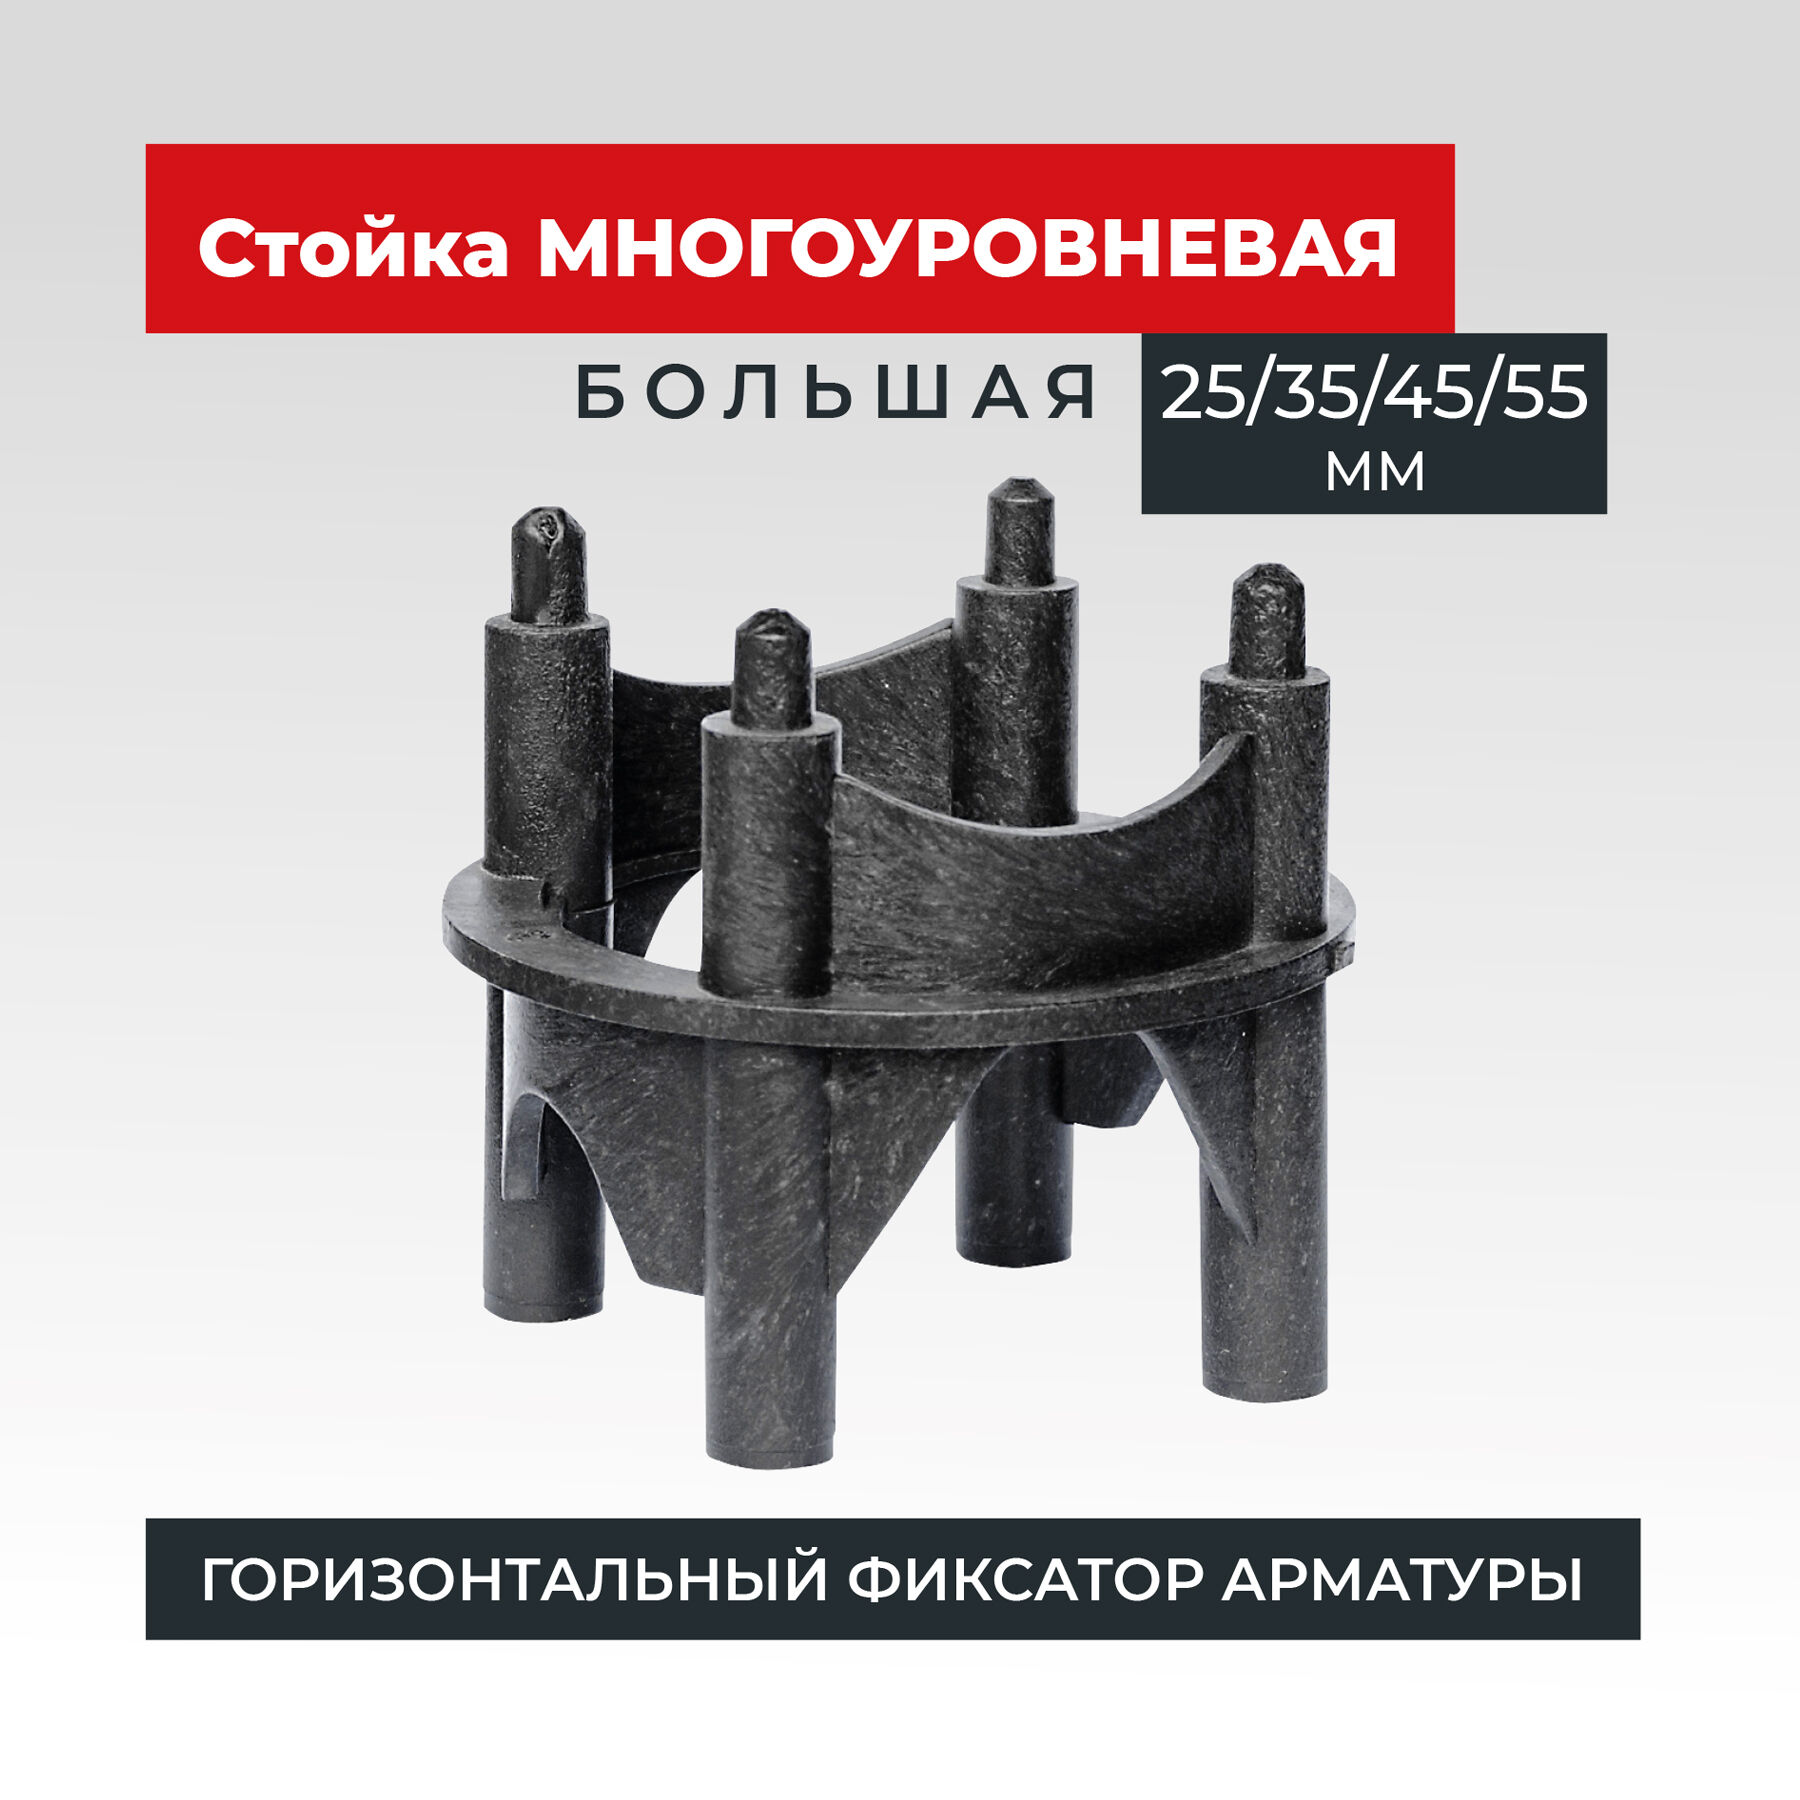 Фиксатор арматуры Промышленник многоуровневый 25/35/45/55 упаковка 250 шт.